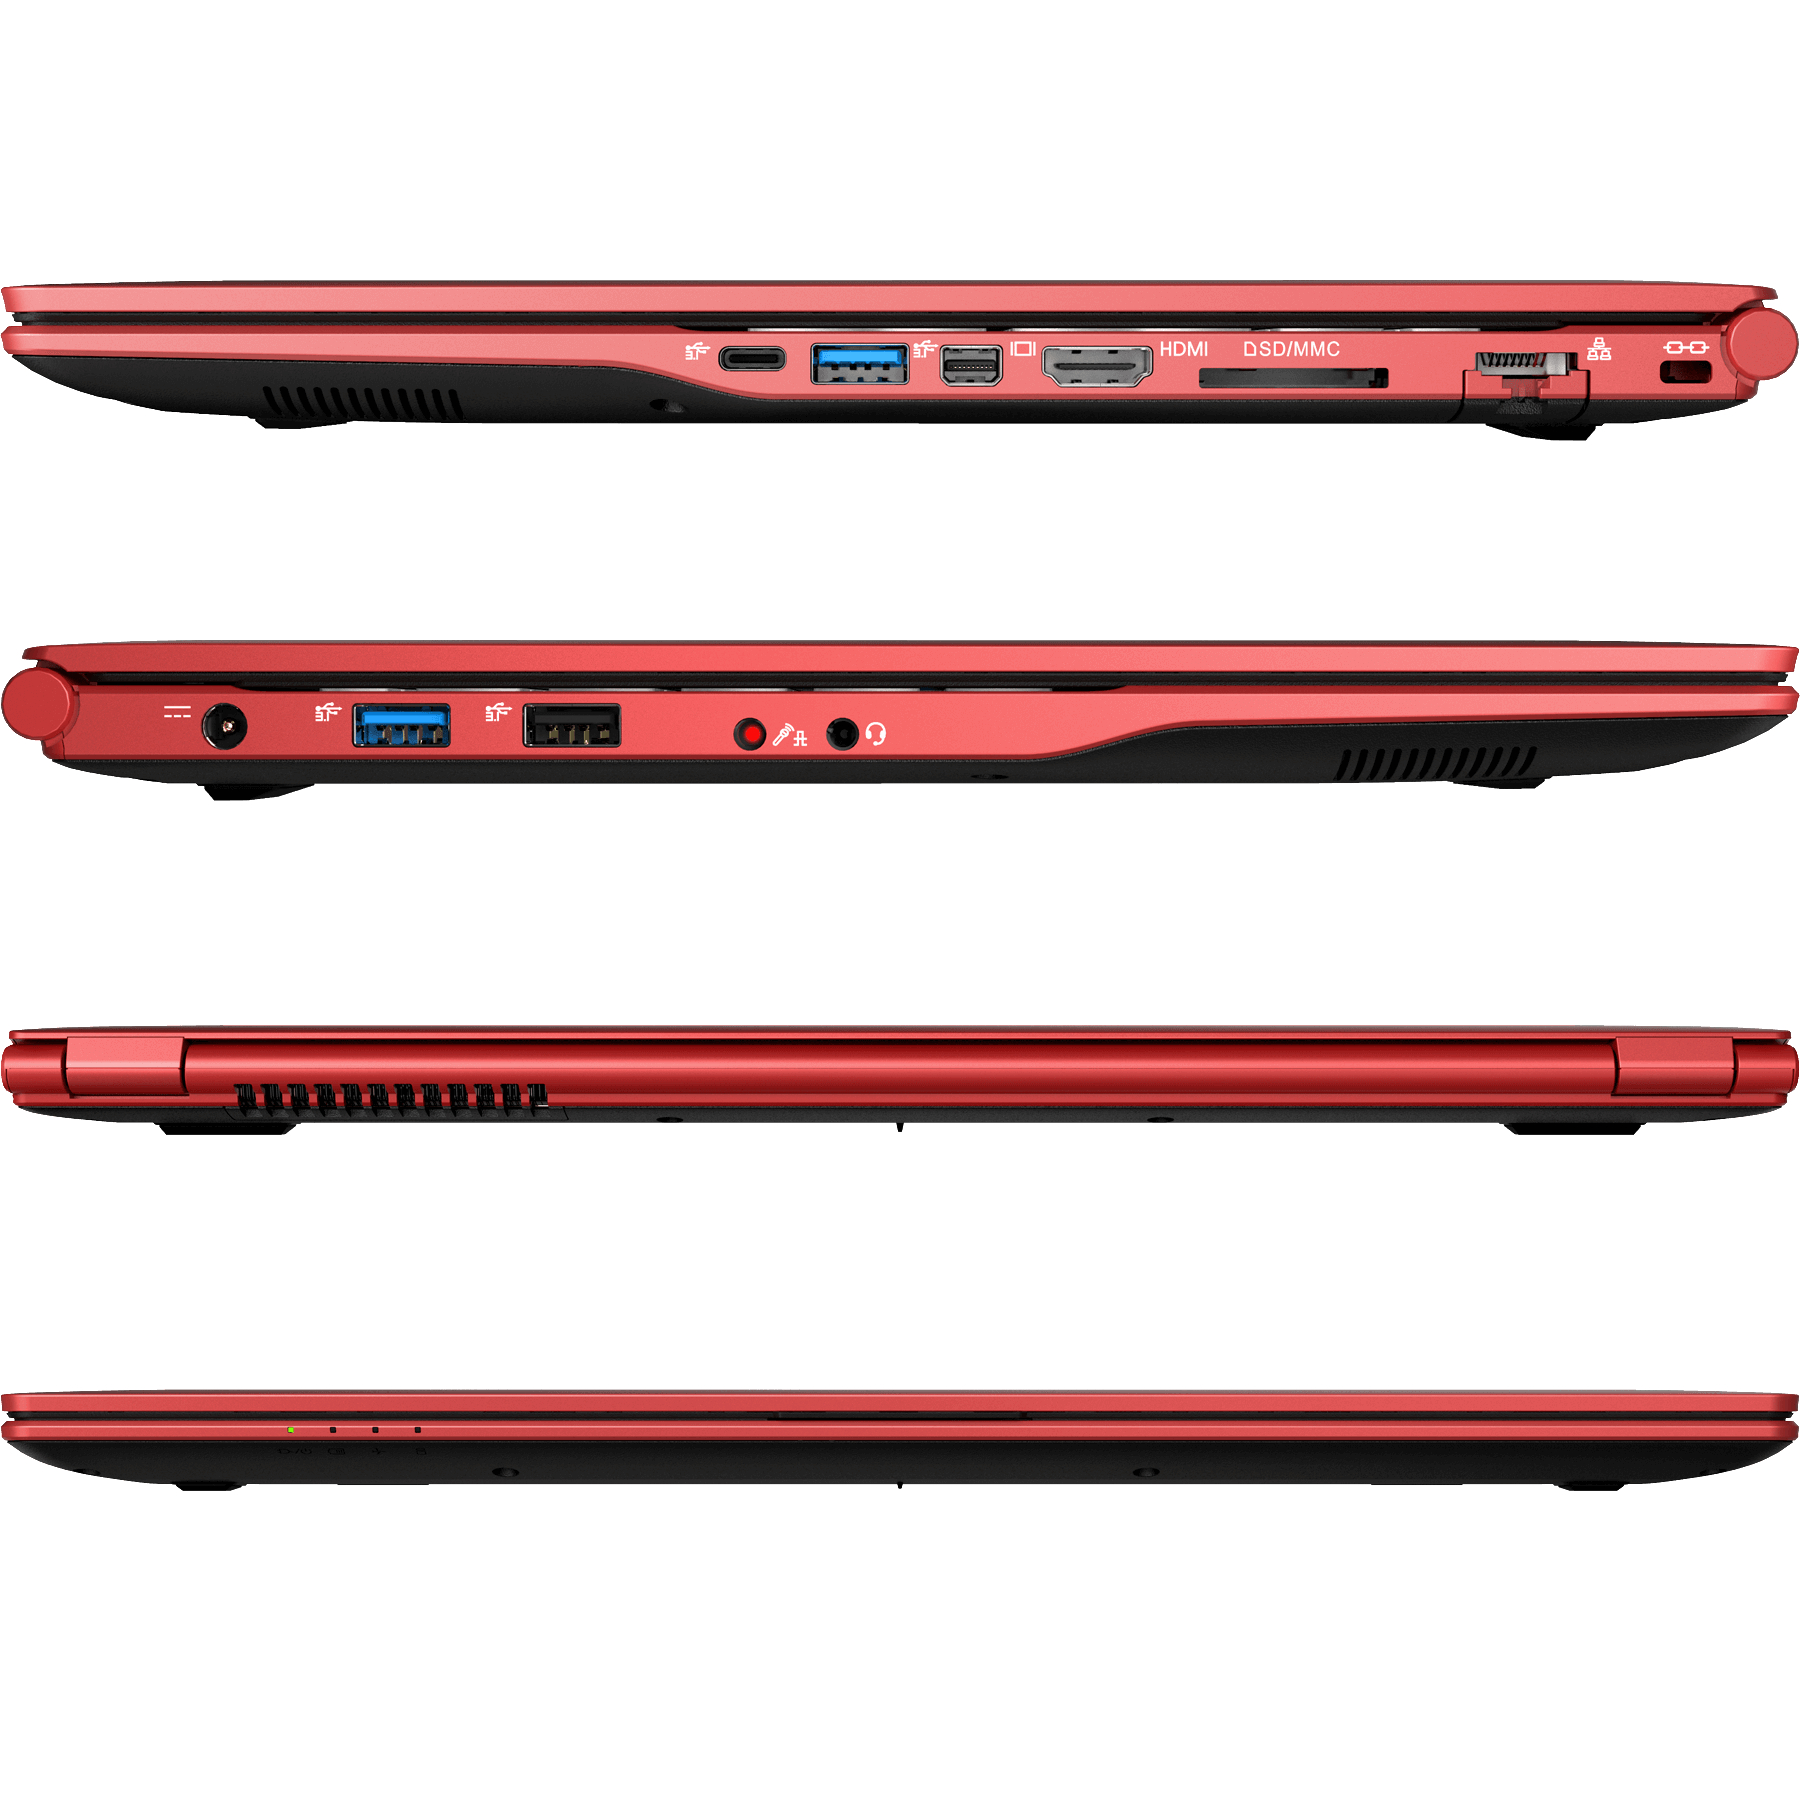 SCHENKER SLIM 15 i5 Notebook UHD GB Rot mit Core™ Display, 16 L19hvf, mSSD, 500 Zoll RED Intel - GB RAM, Intel® 15,6 Prozessor, Grafik